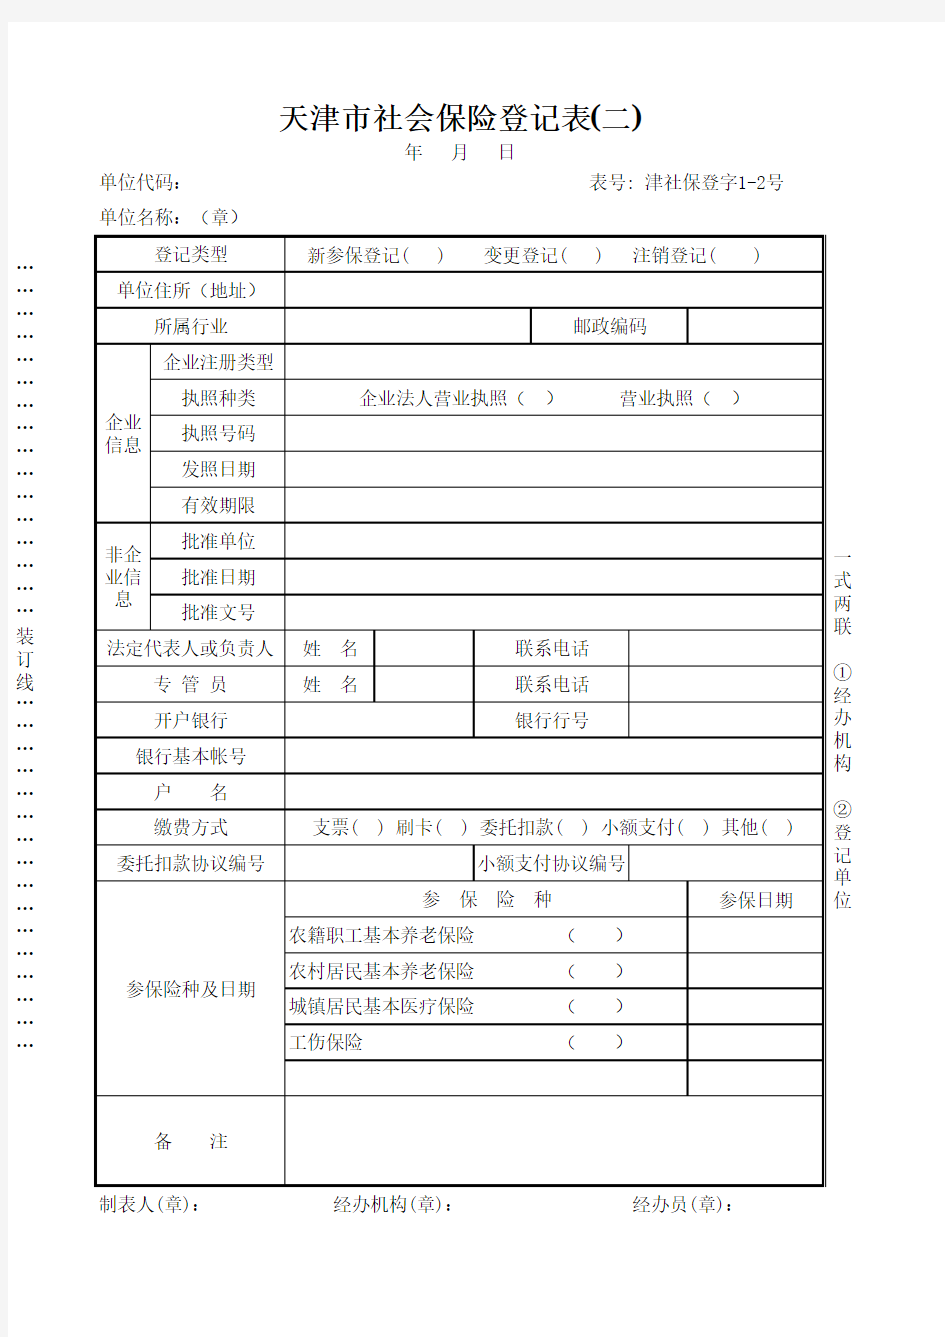 天津市社会保险登记表(二)津社保登字1-2号